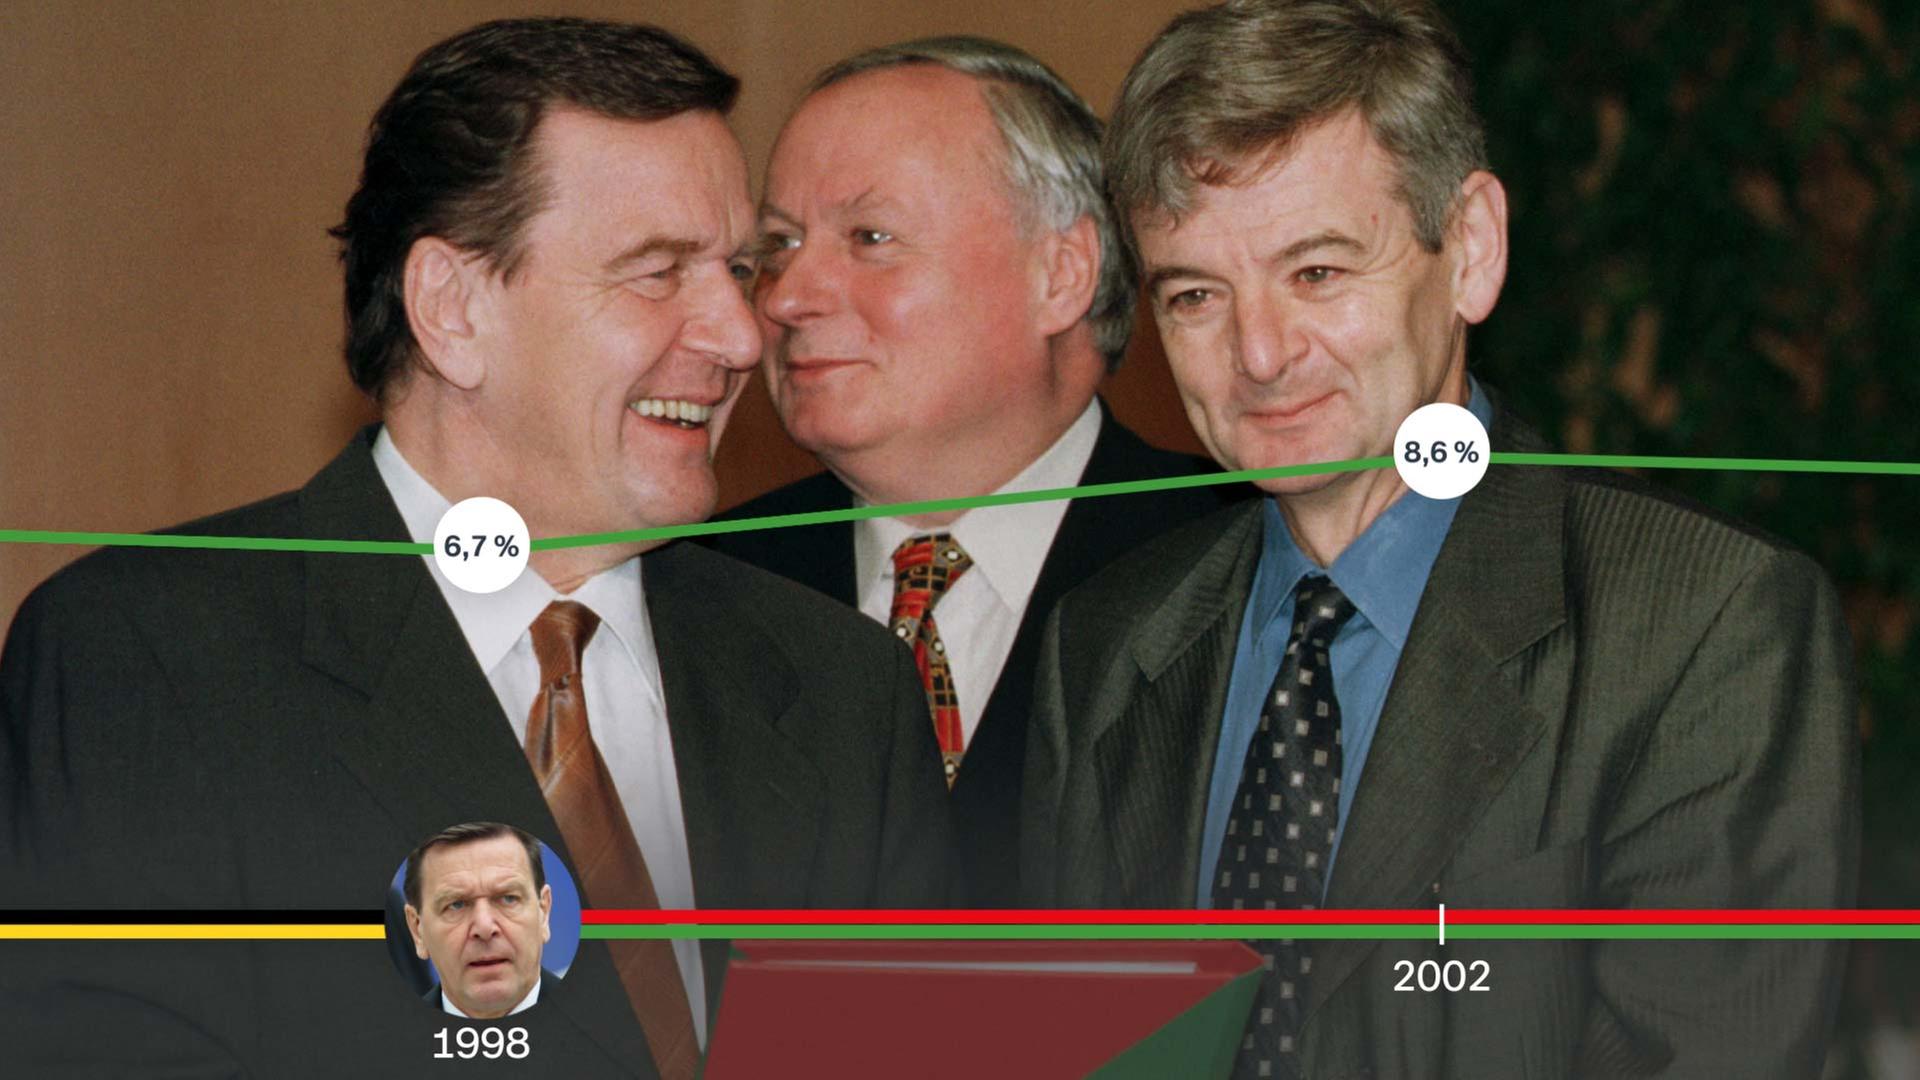 Rot-Grün 1998: Gerhard Schröder, Oskar Lafontaine, Joschka Fischer